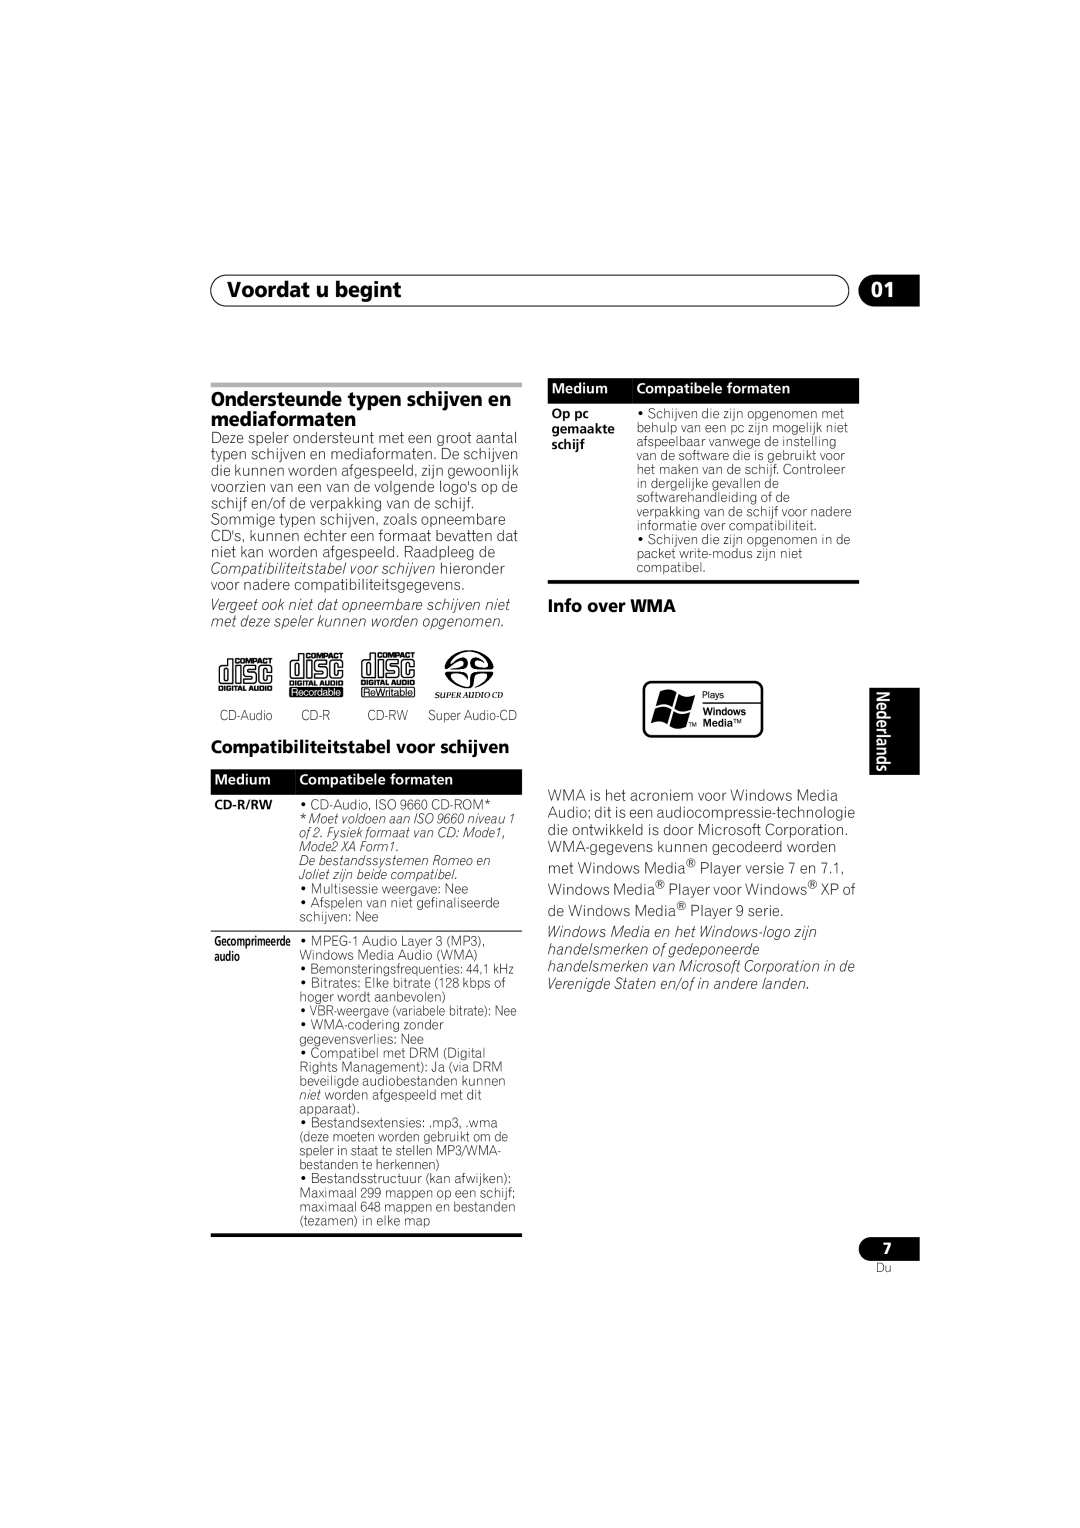 Pioneer PD-D6-J manual Voordat u begint, Ondersteunde typen schijven en mediaformaten, Compatibiliteitstabel voor schijven 